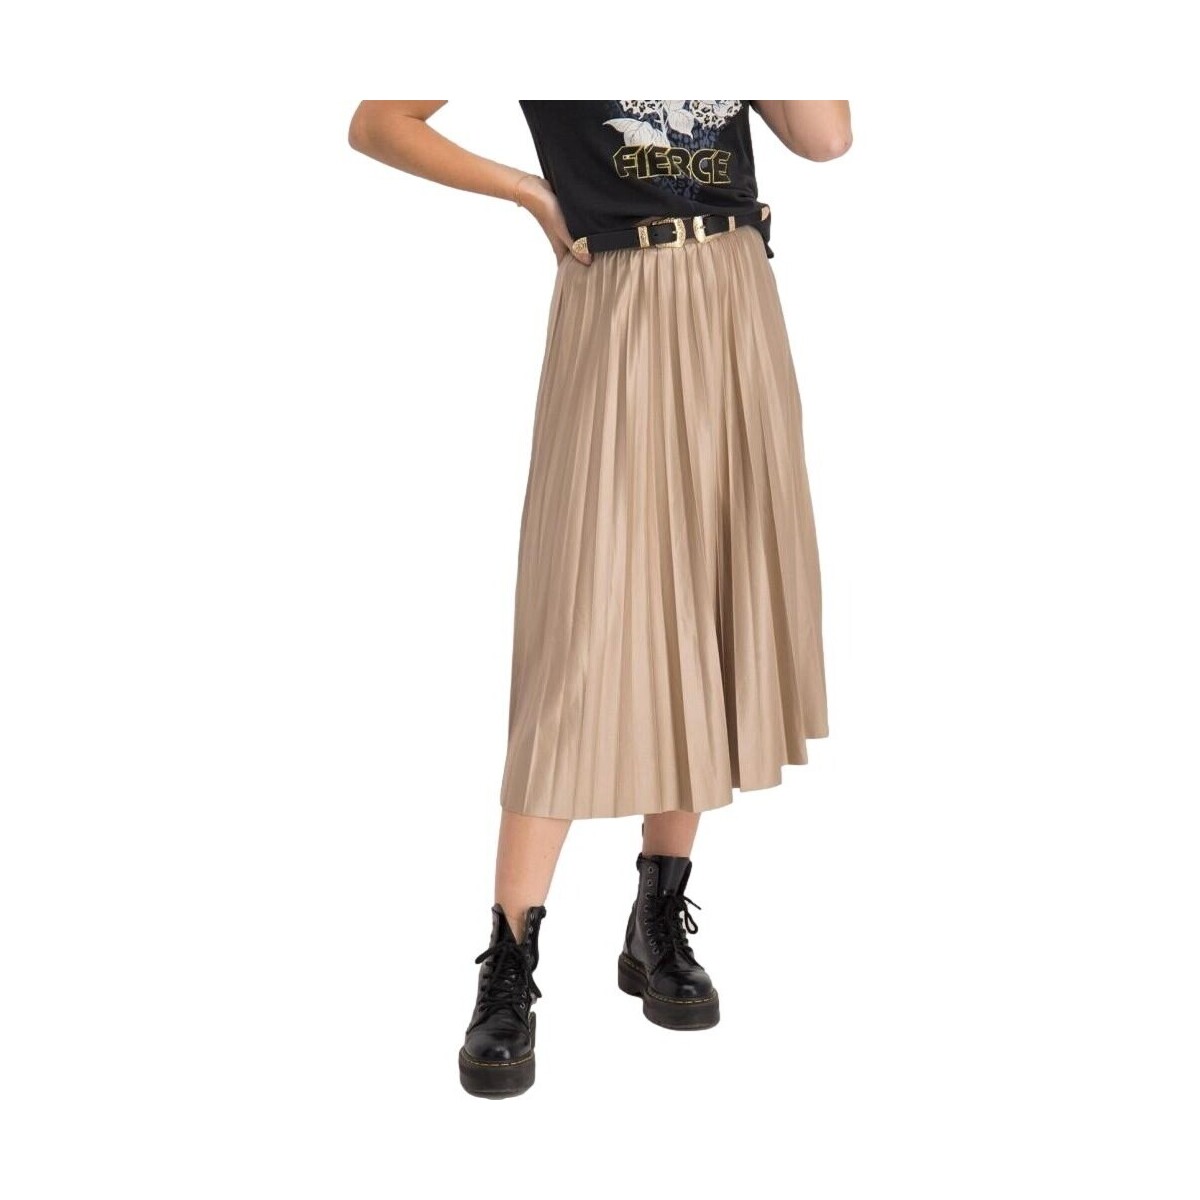 Υφασμάτινα Γυναίκα Φούστες Vila Nitban Midi Skirt - Sand Shell Beige